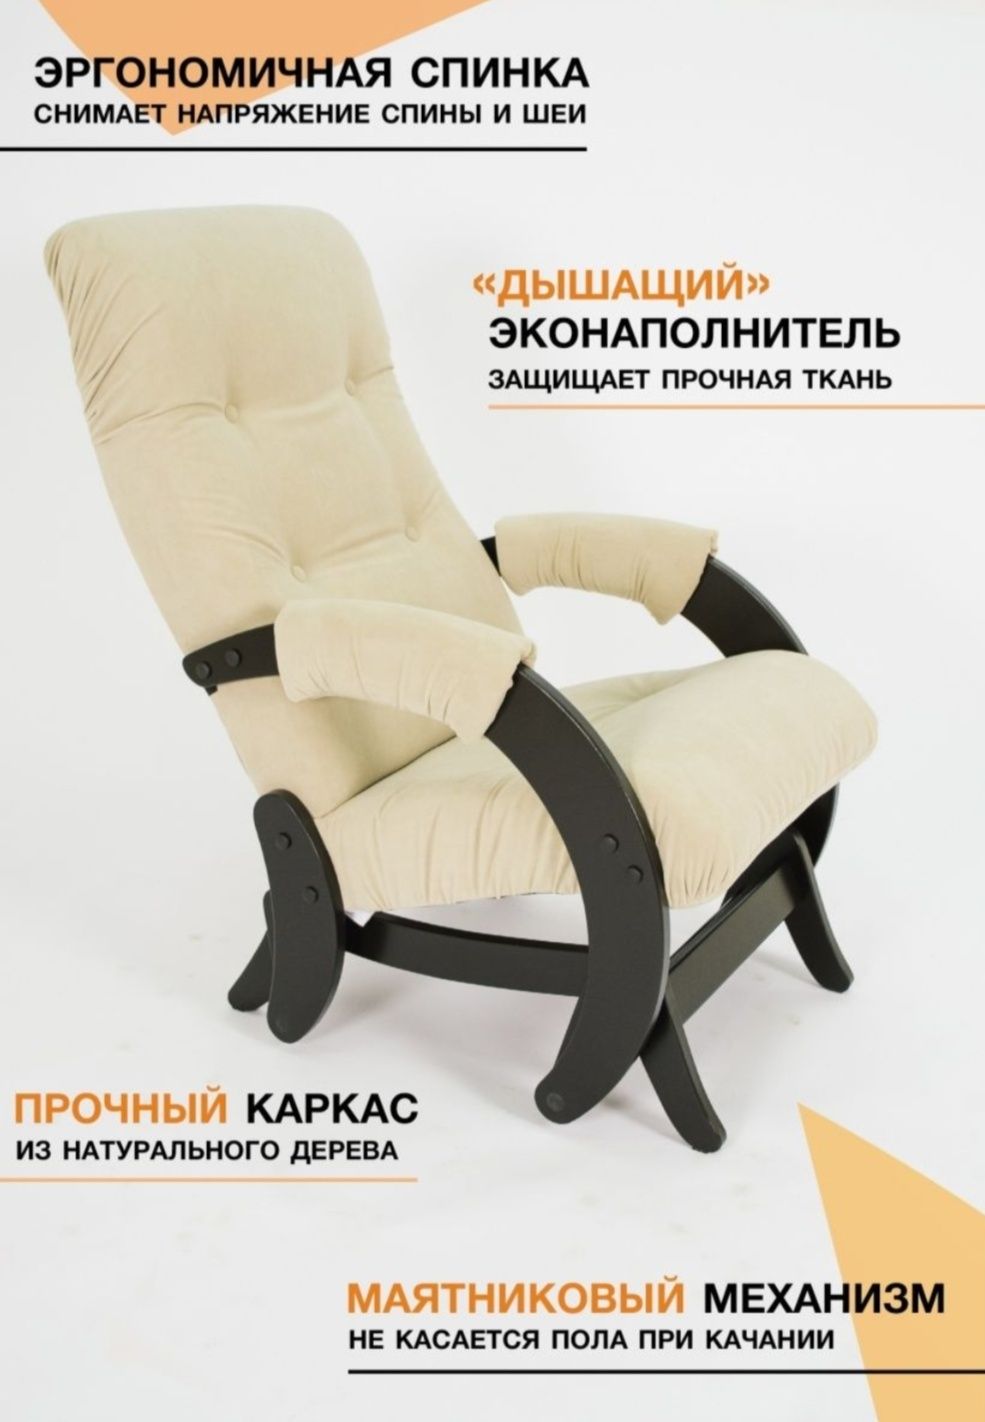 Маятниковые кресла — Купить кресло-качалку с маятниковым механизмом? недорого